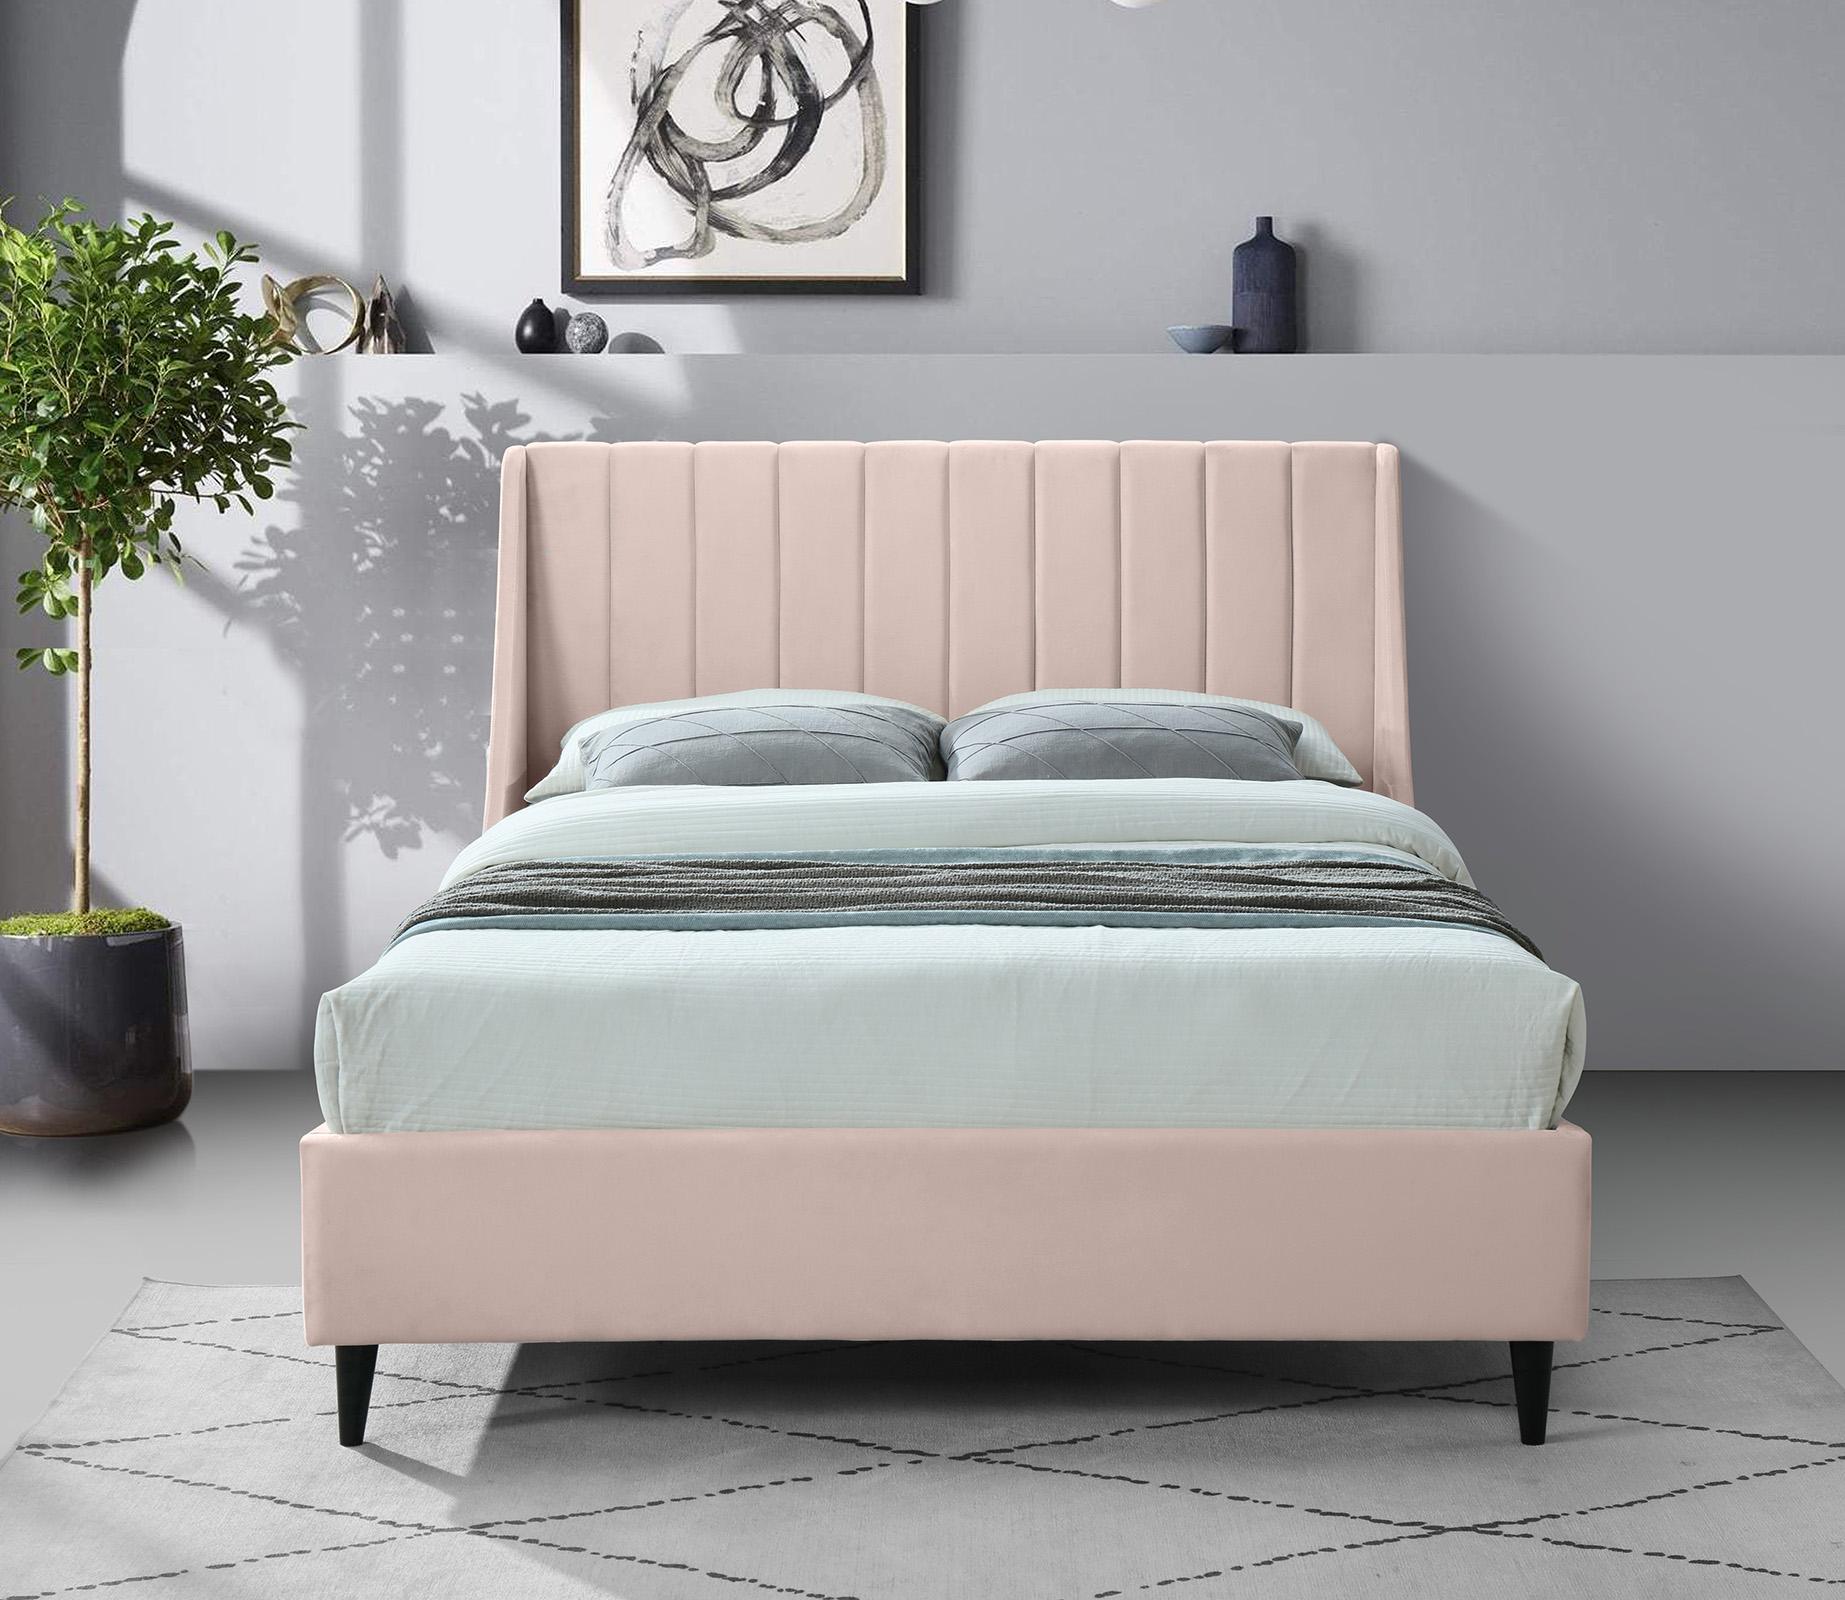 

    
Meridian Furniture EVA EvaPink-F Platform Bed Pink EvaPink-F
